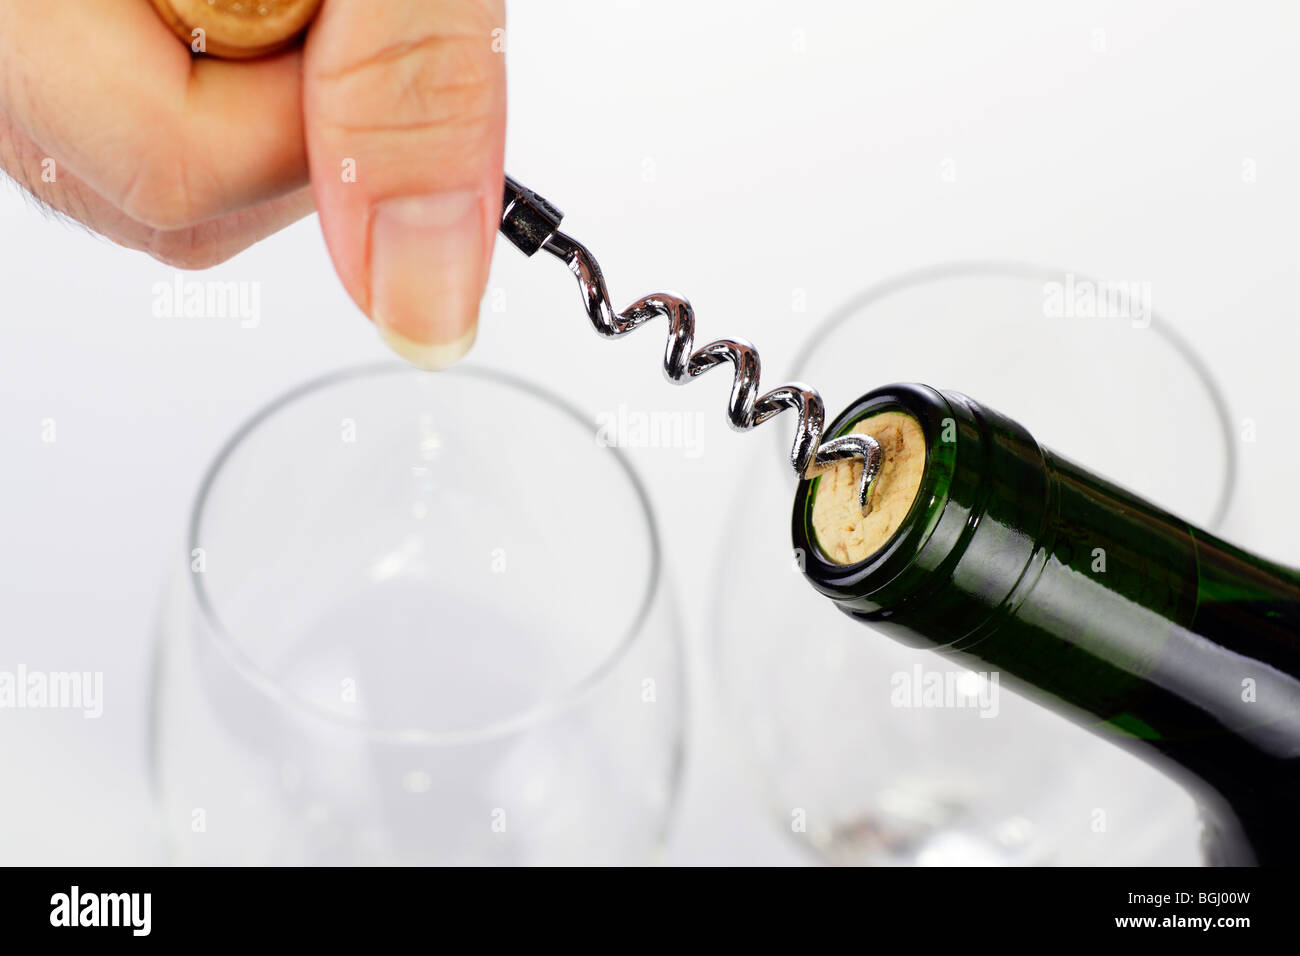 A woman's hand l'ouverture d'une bouteille de vin avec un tire-bouchon. Deux verres à vin sont vides à l'arrière-plan Banque D'Images